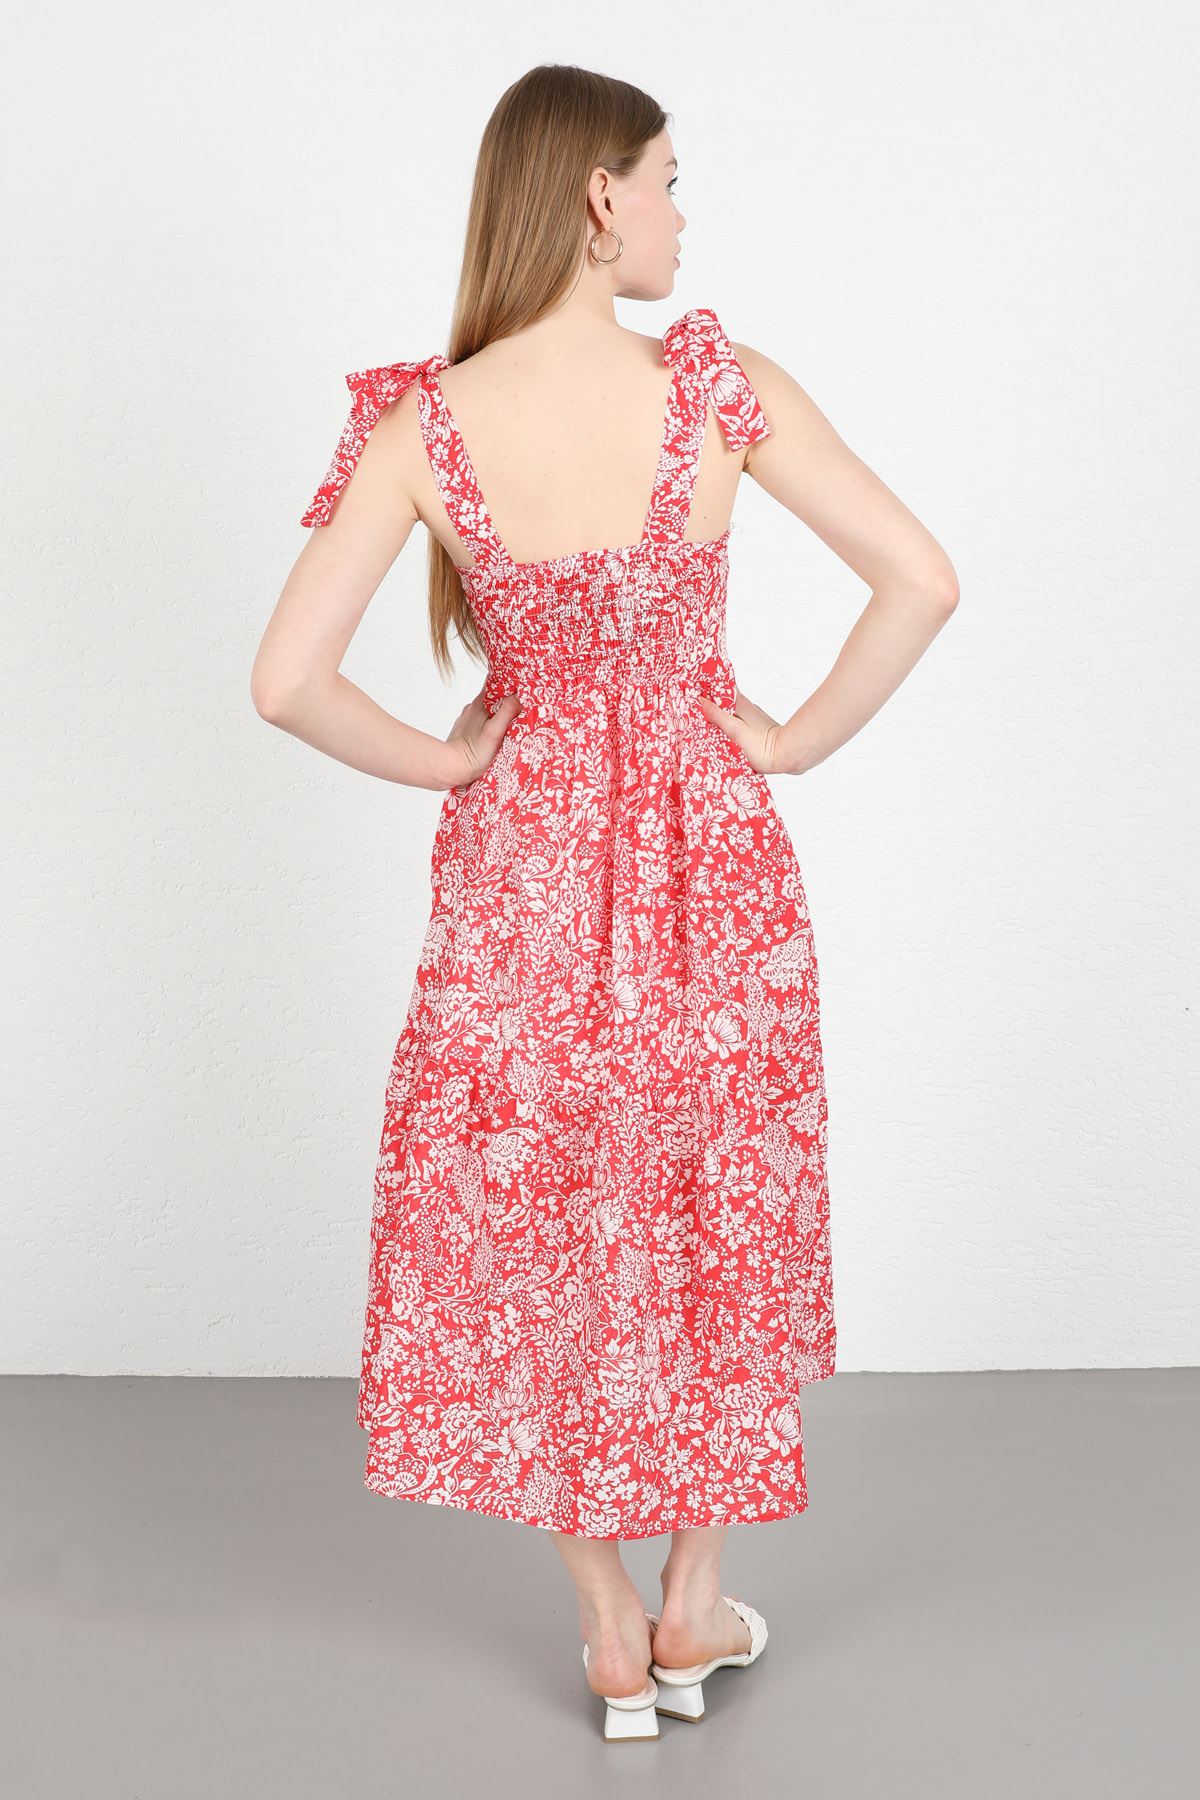 Вуаль Ткань Квадратная шея цветочный принтженское платье до колен - Kрасный